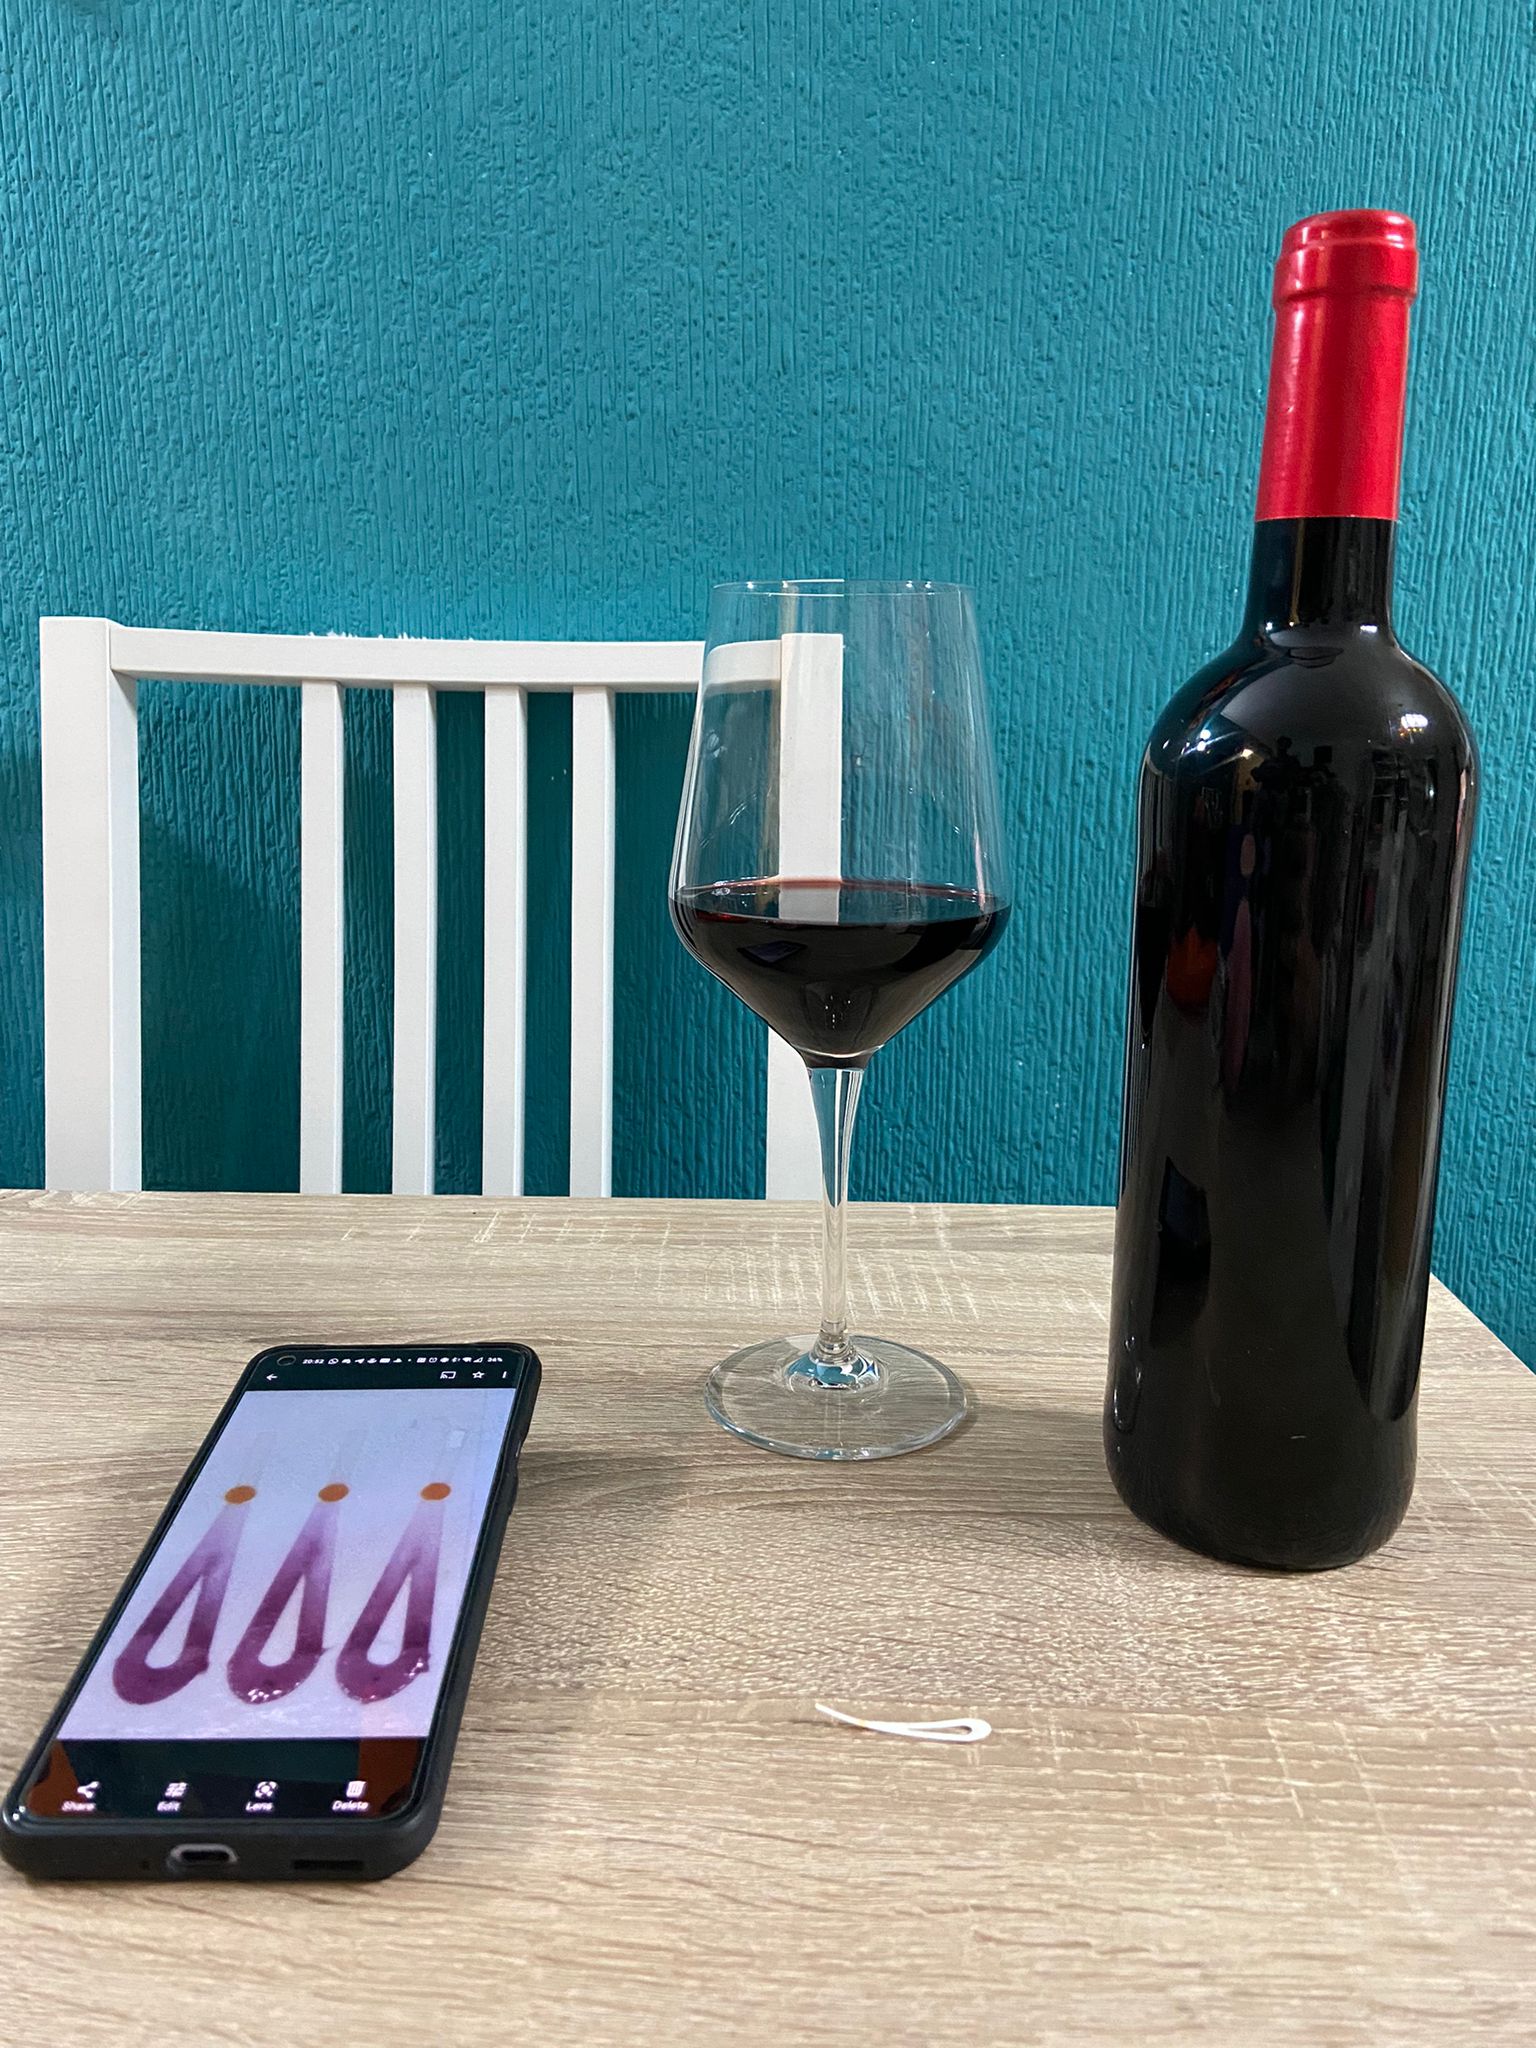 Copa y botella de vino que ha sido analizado por el Smartphone